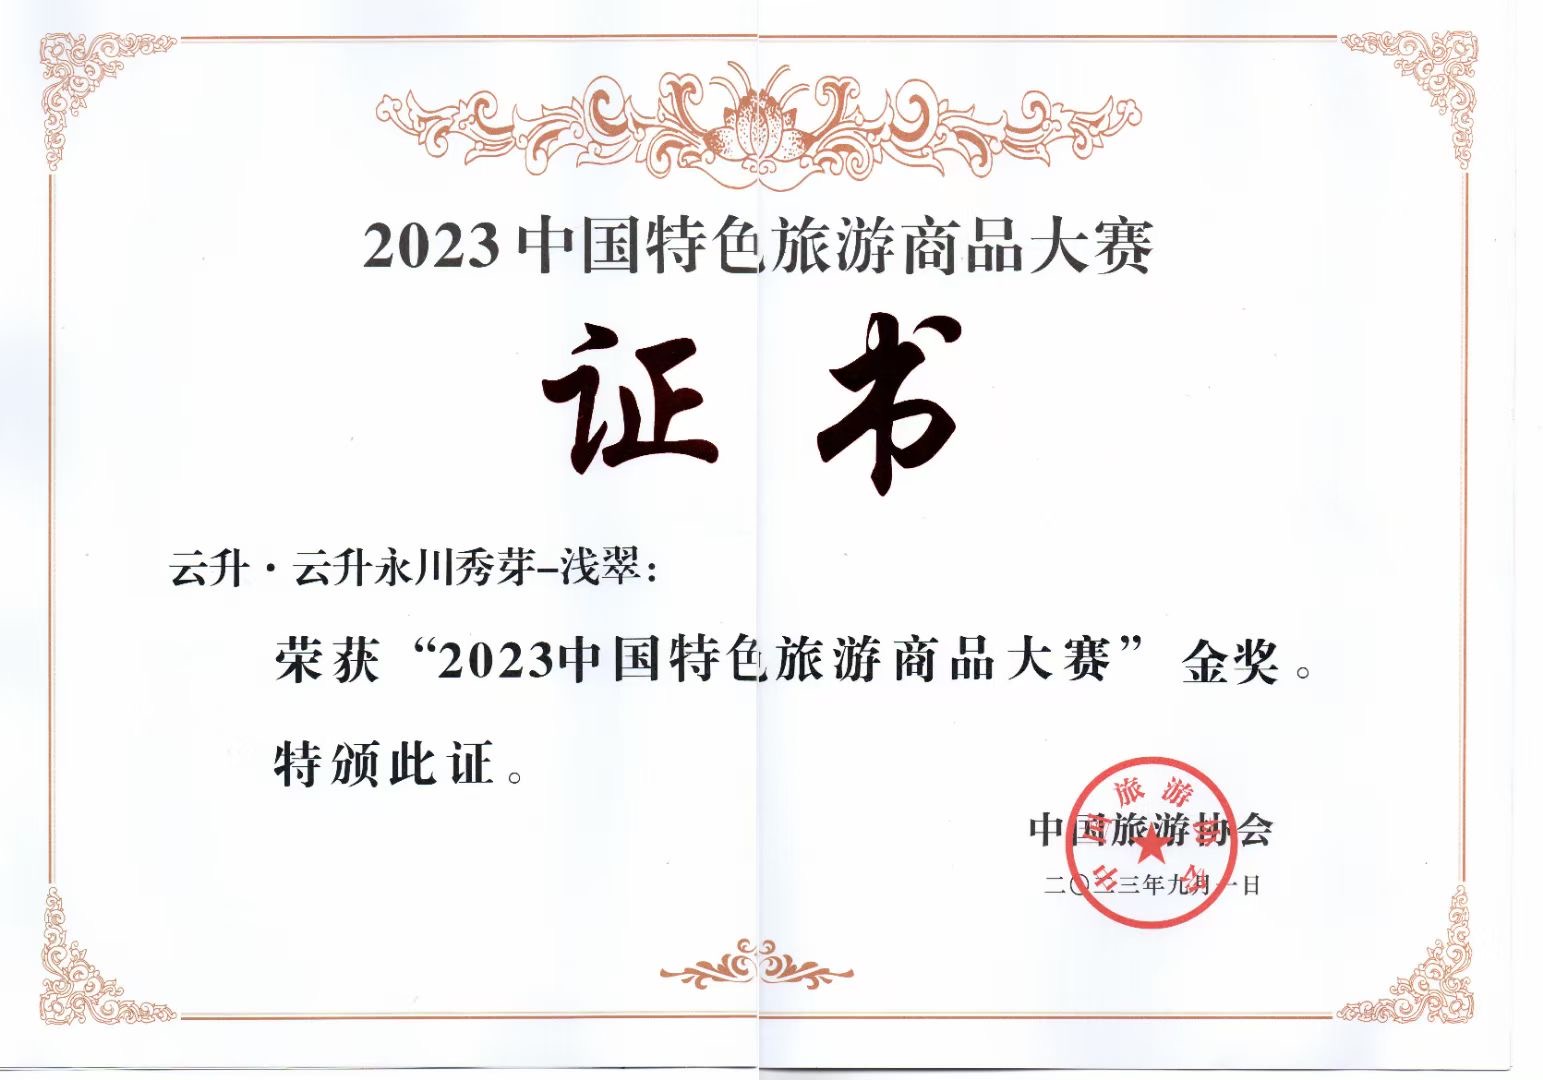 2023年 云升·永川秀芽获2023年中国特色旅游商品金奖